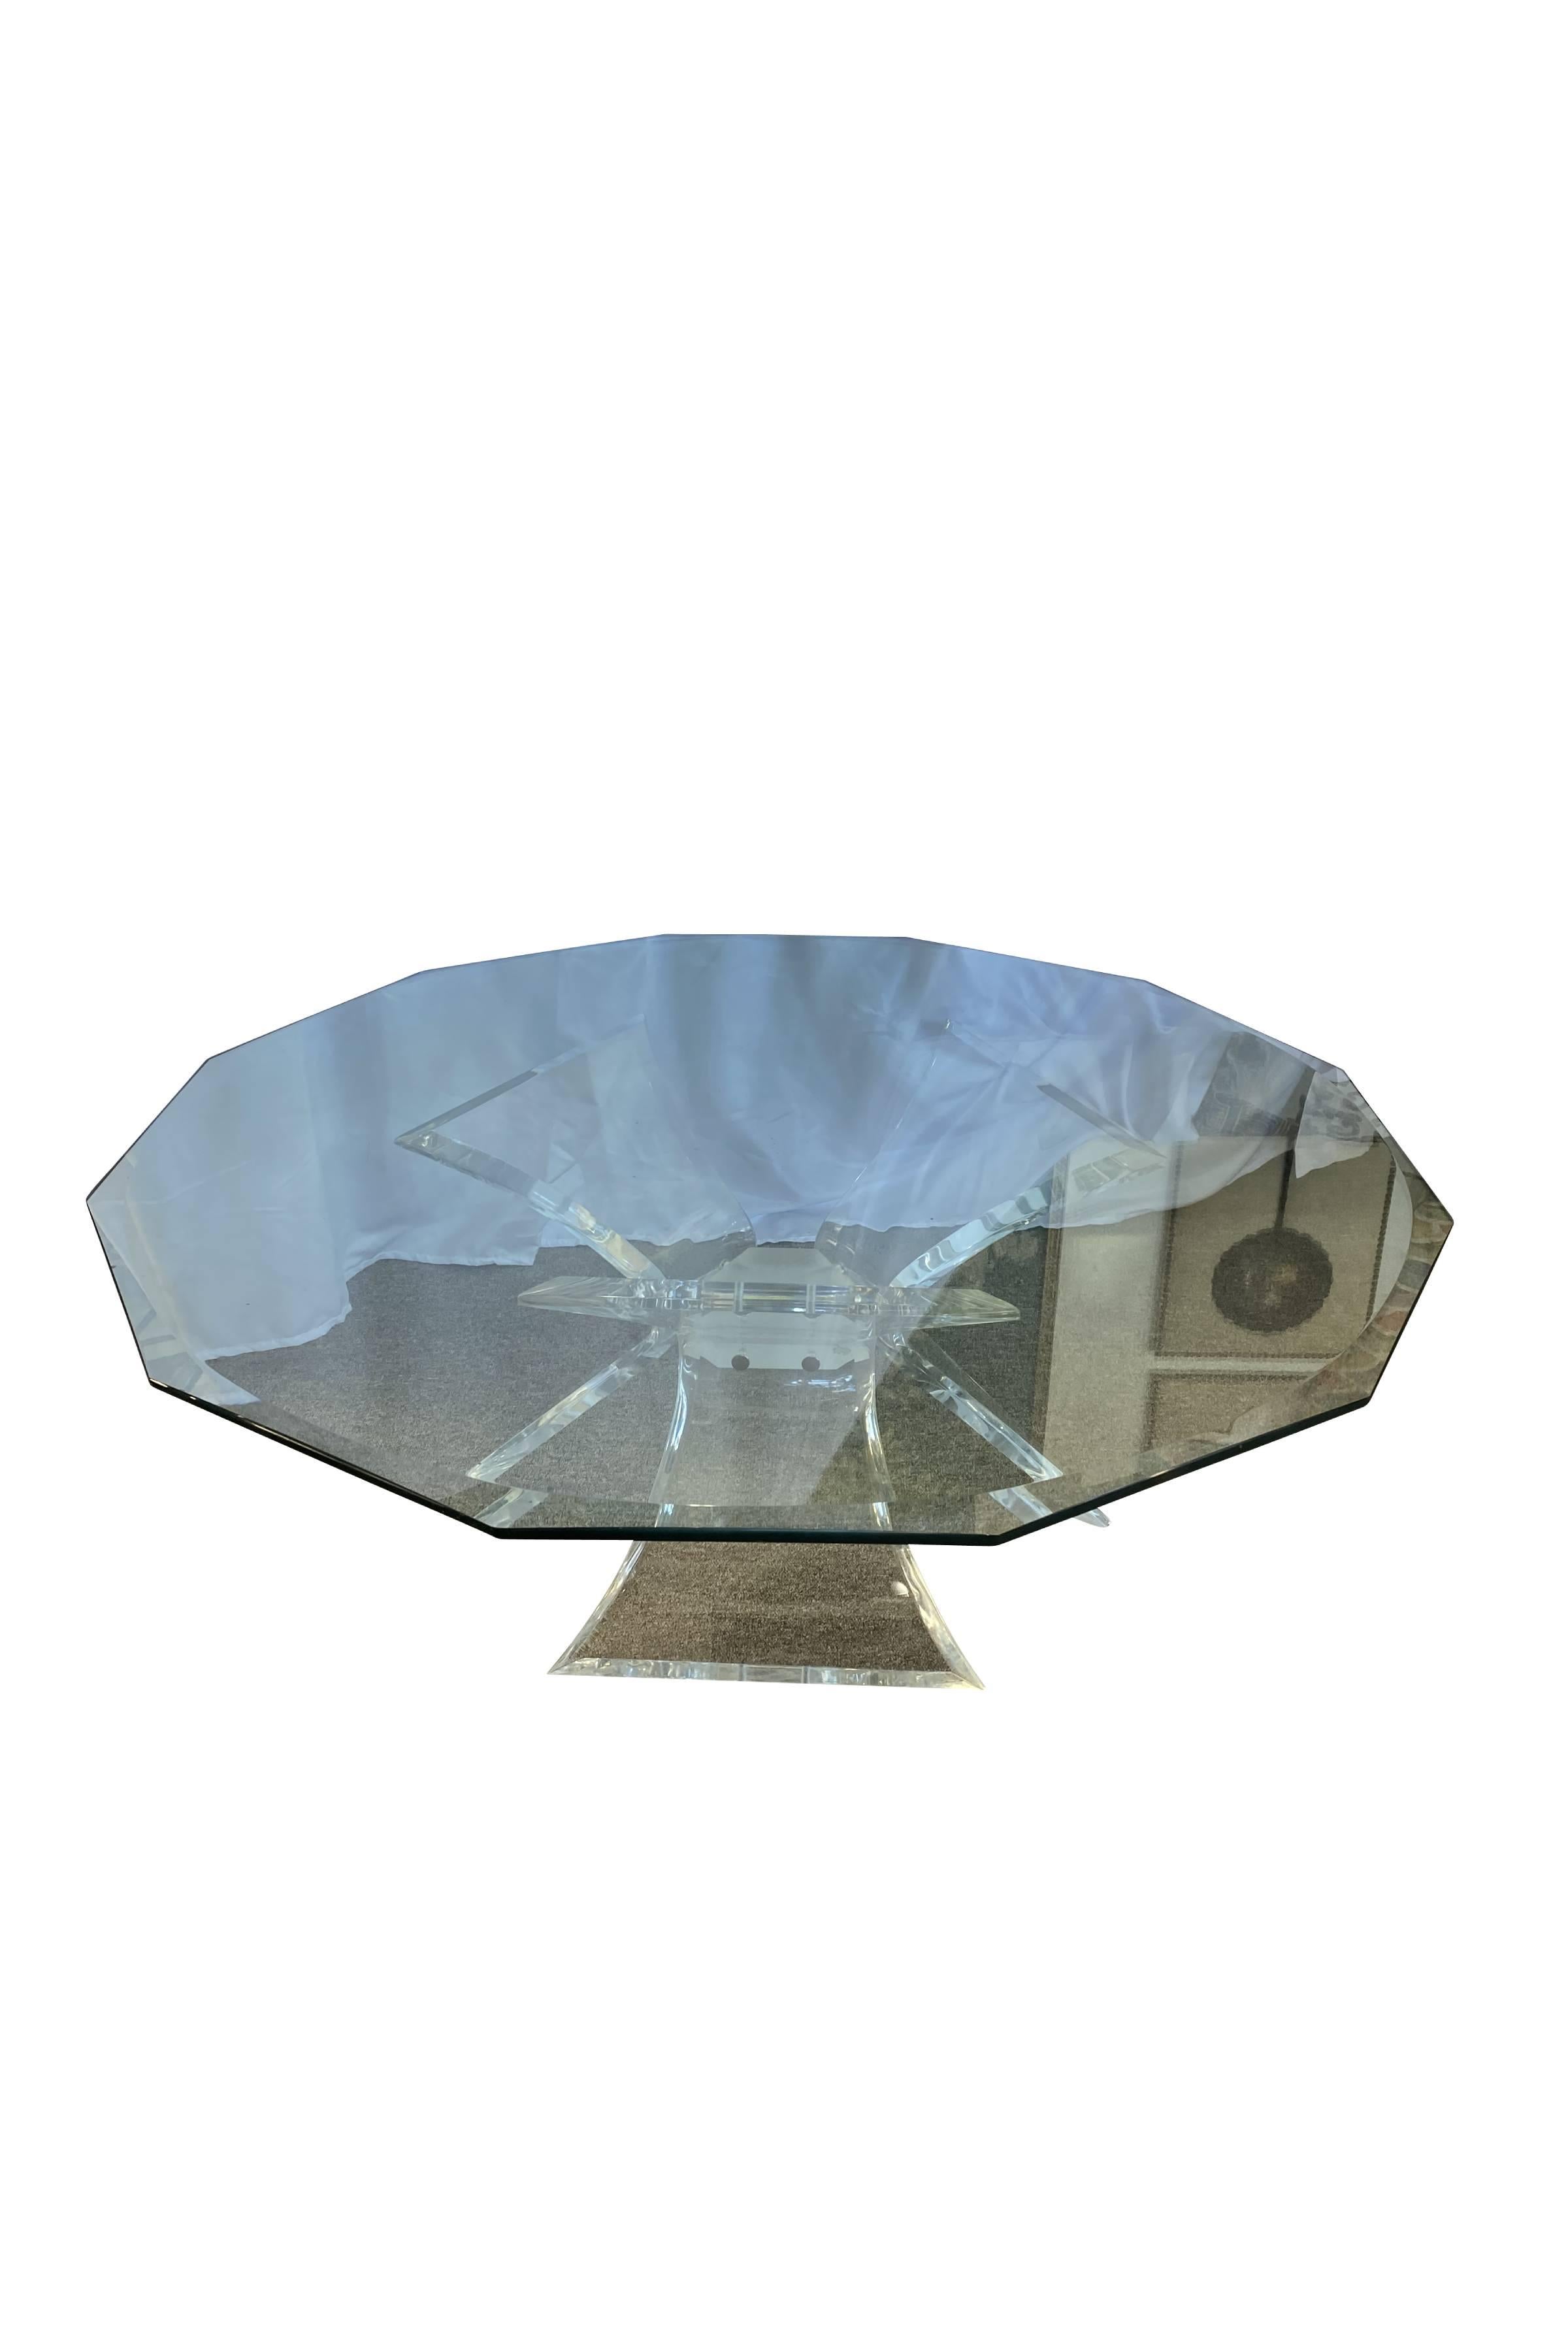 Cette table basse unique se caractérise par une base moderne en Lucite où trois pieds incurvés en forme de sablier soutiennent le plateau octogonal en verre biseauté. Le plateau en verre offre une vue dégagée sur la structure unique et équilibrée du